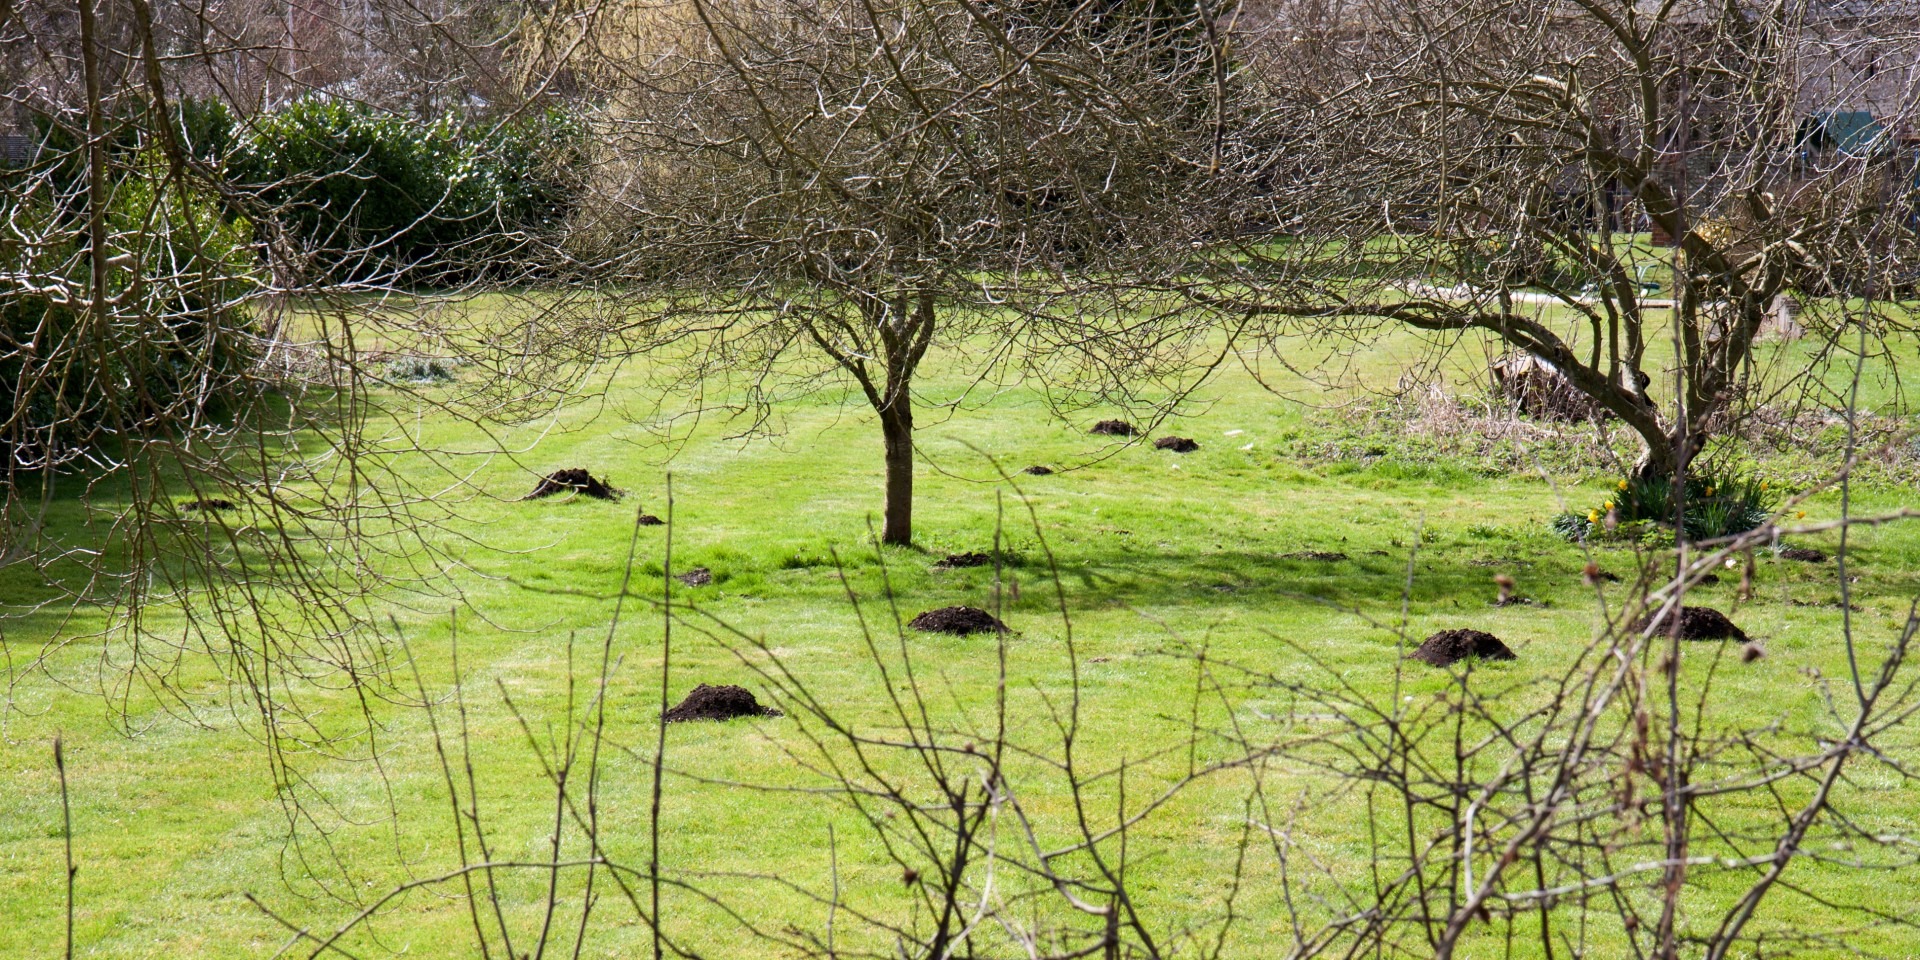 molehill molehills garden free photo